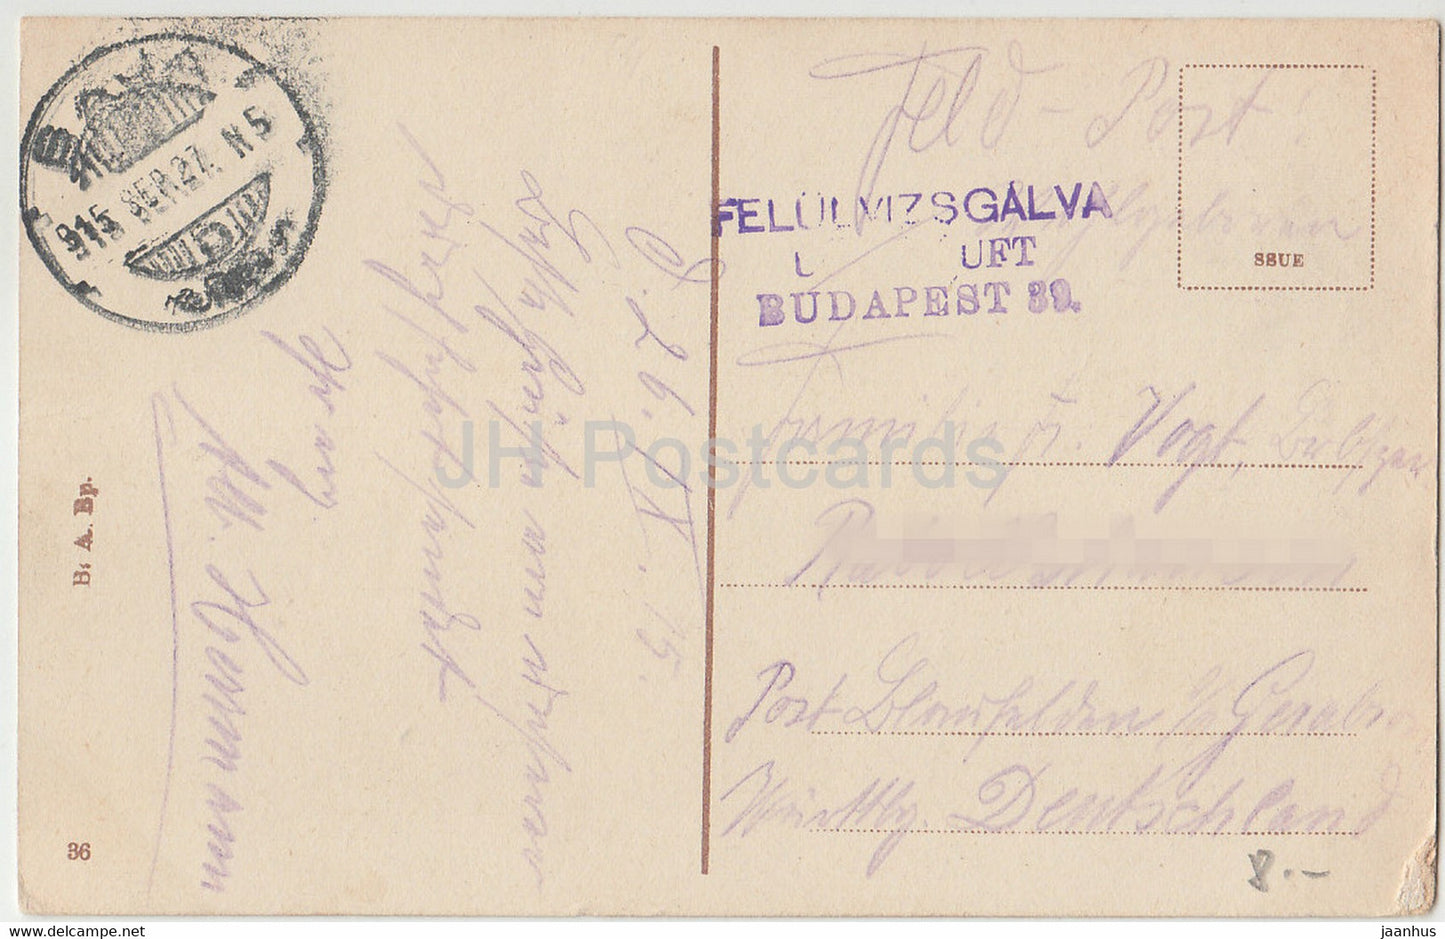 Budapest - Vajda Hunyad vara - Burg von Vajda Hunyad - Feldpost - alte Postkarte - 1915 - Ungarn - gebraucht